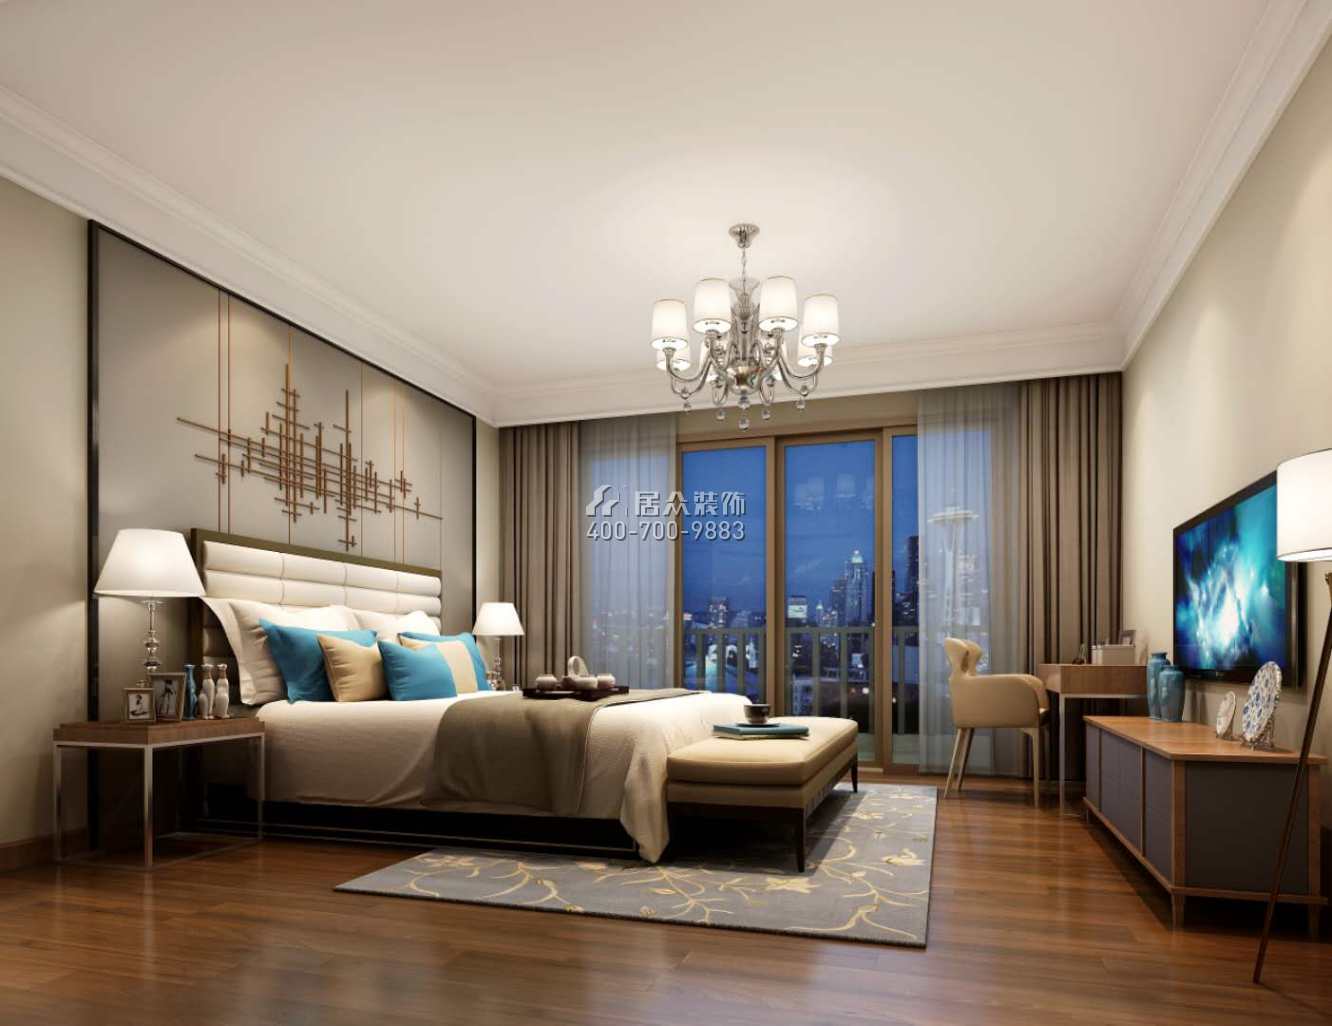 海逸豪庭尚都127平方米现代简约风格复式户型卧室装修效果图